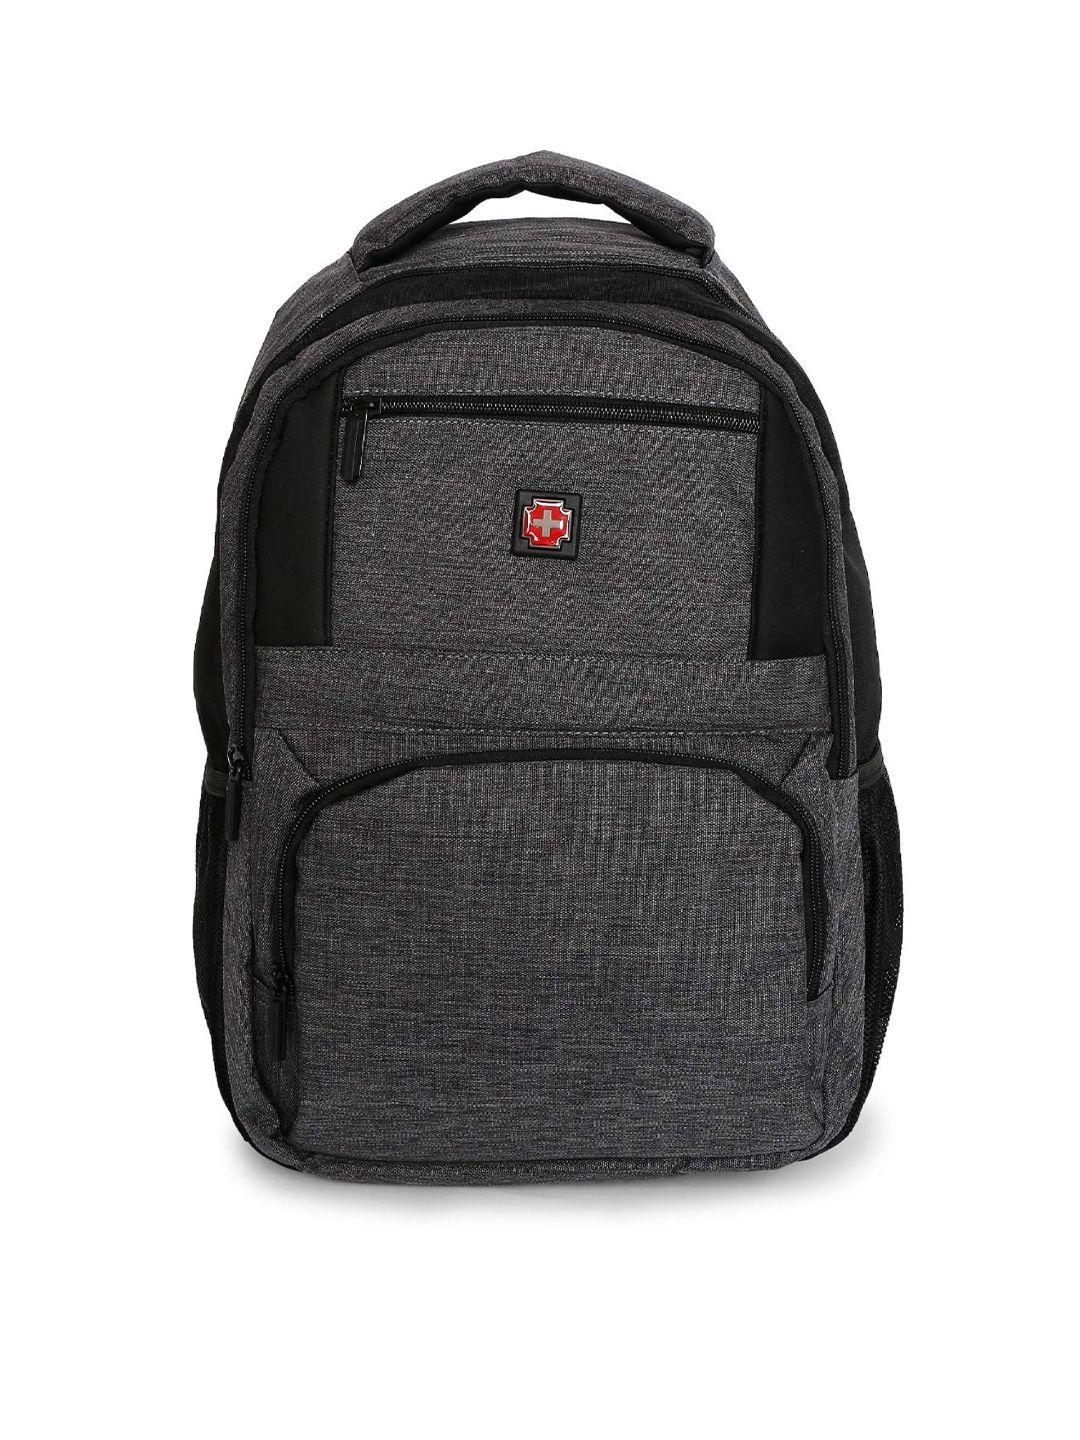 swiss brand odense range navy backpack